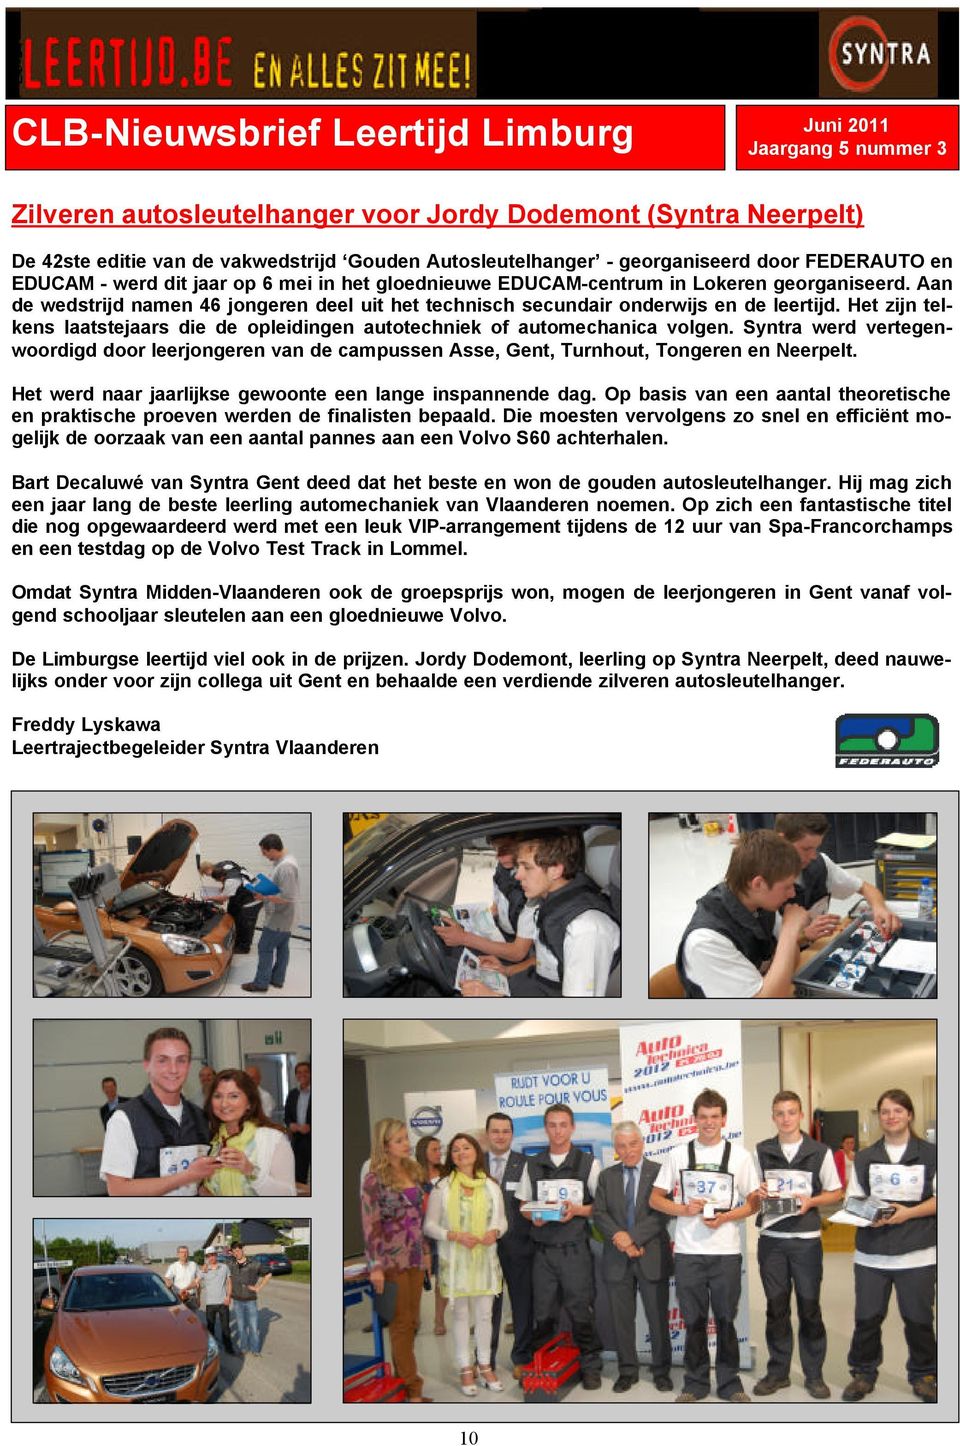 Het zijn telkens laatstejaars die de opleidingen autotechniek of automechanica volgen. Syntra werd vertegenwoordigd door leerjongeren van de campussen Asse, Gent, Turnhout, Tongeren en Neerpelt.